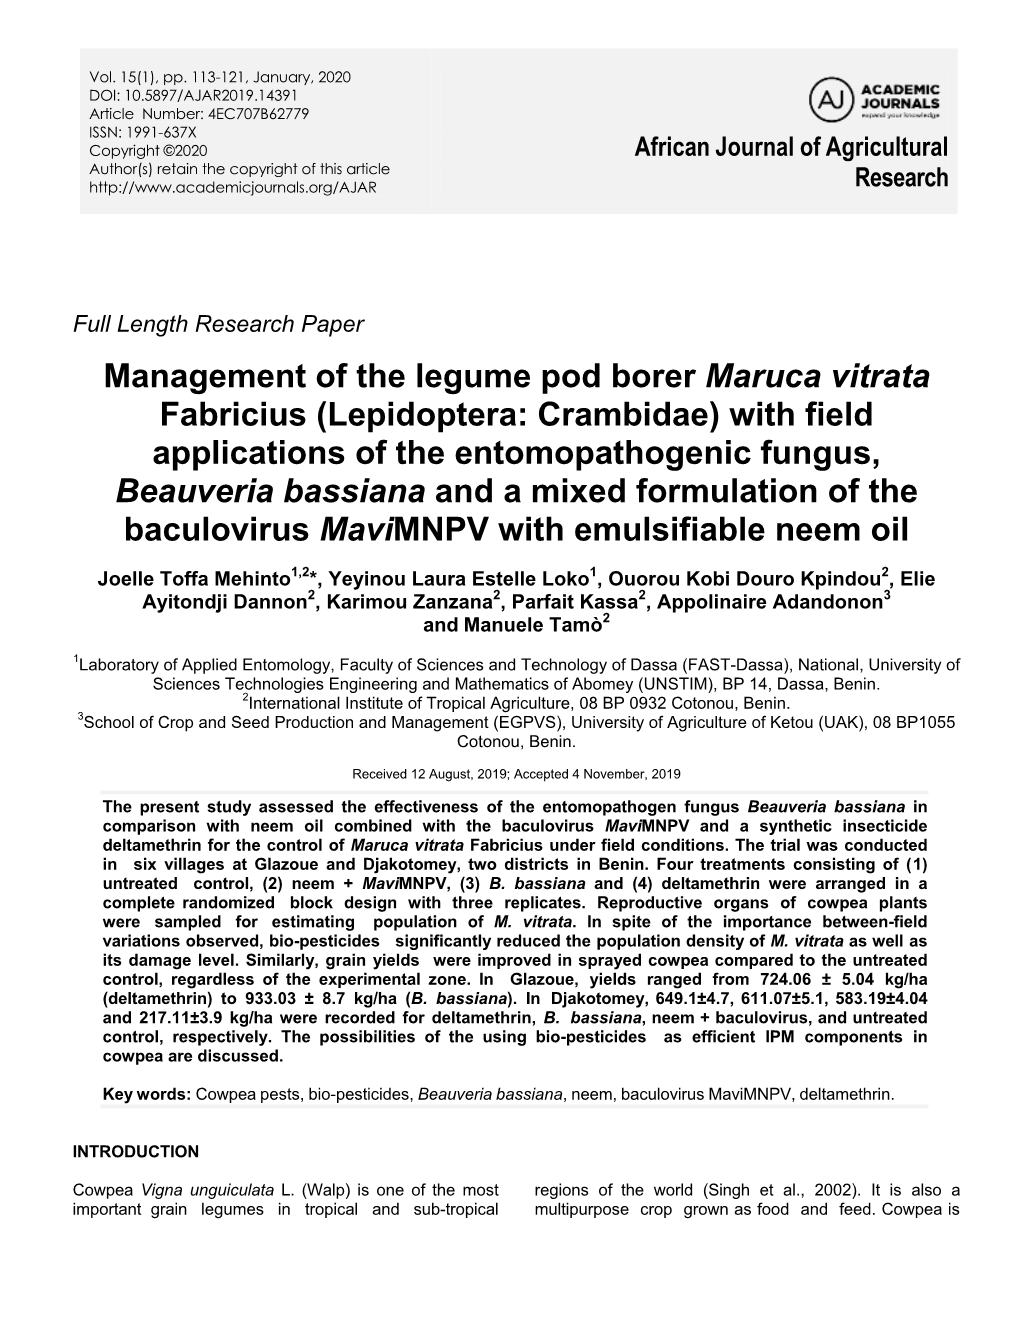 Management of the Legume Pod Borer Maruca Vitrata Fabricius